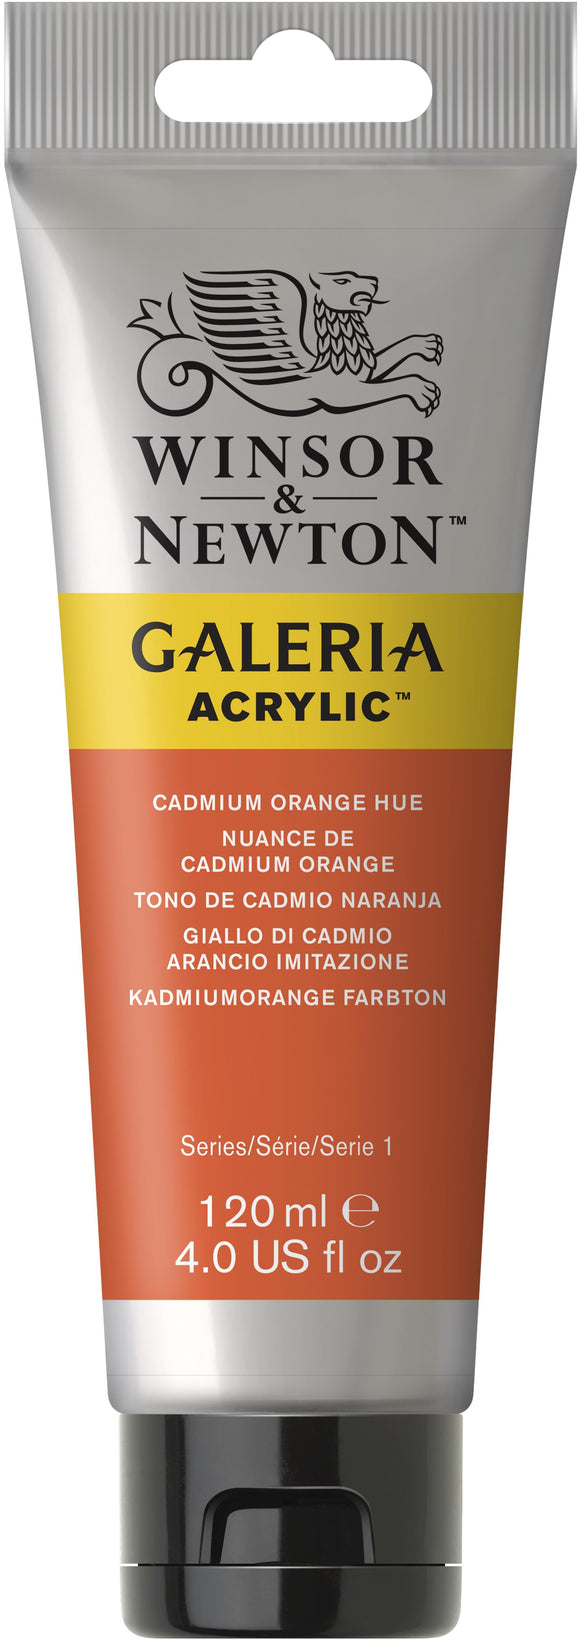 Winsor & Newton Galeria Acrylic Cadmium Orange Hue 120Ml